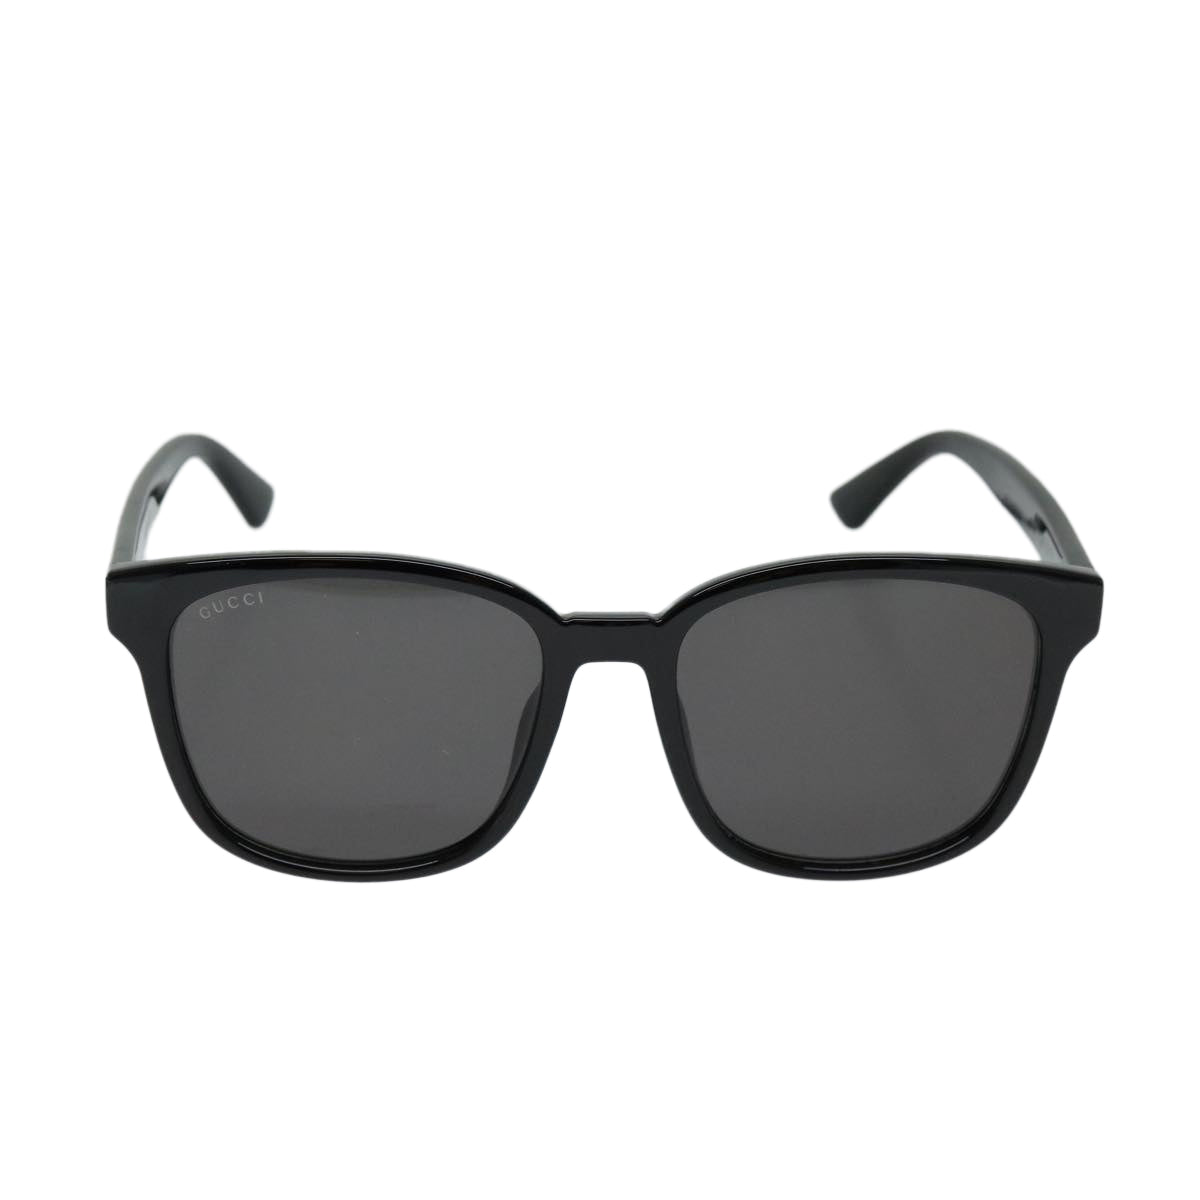 GUCCI Sunglasses plastic Black Auth 69126 - 0